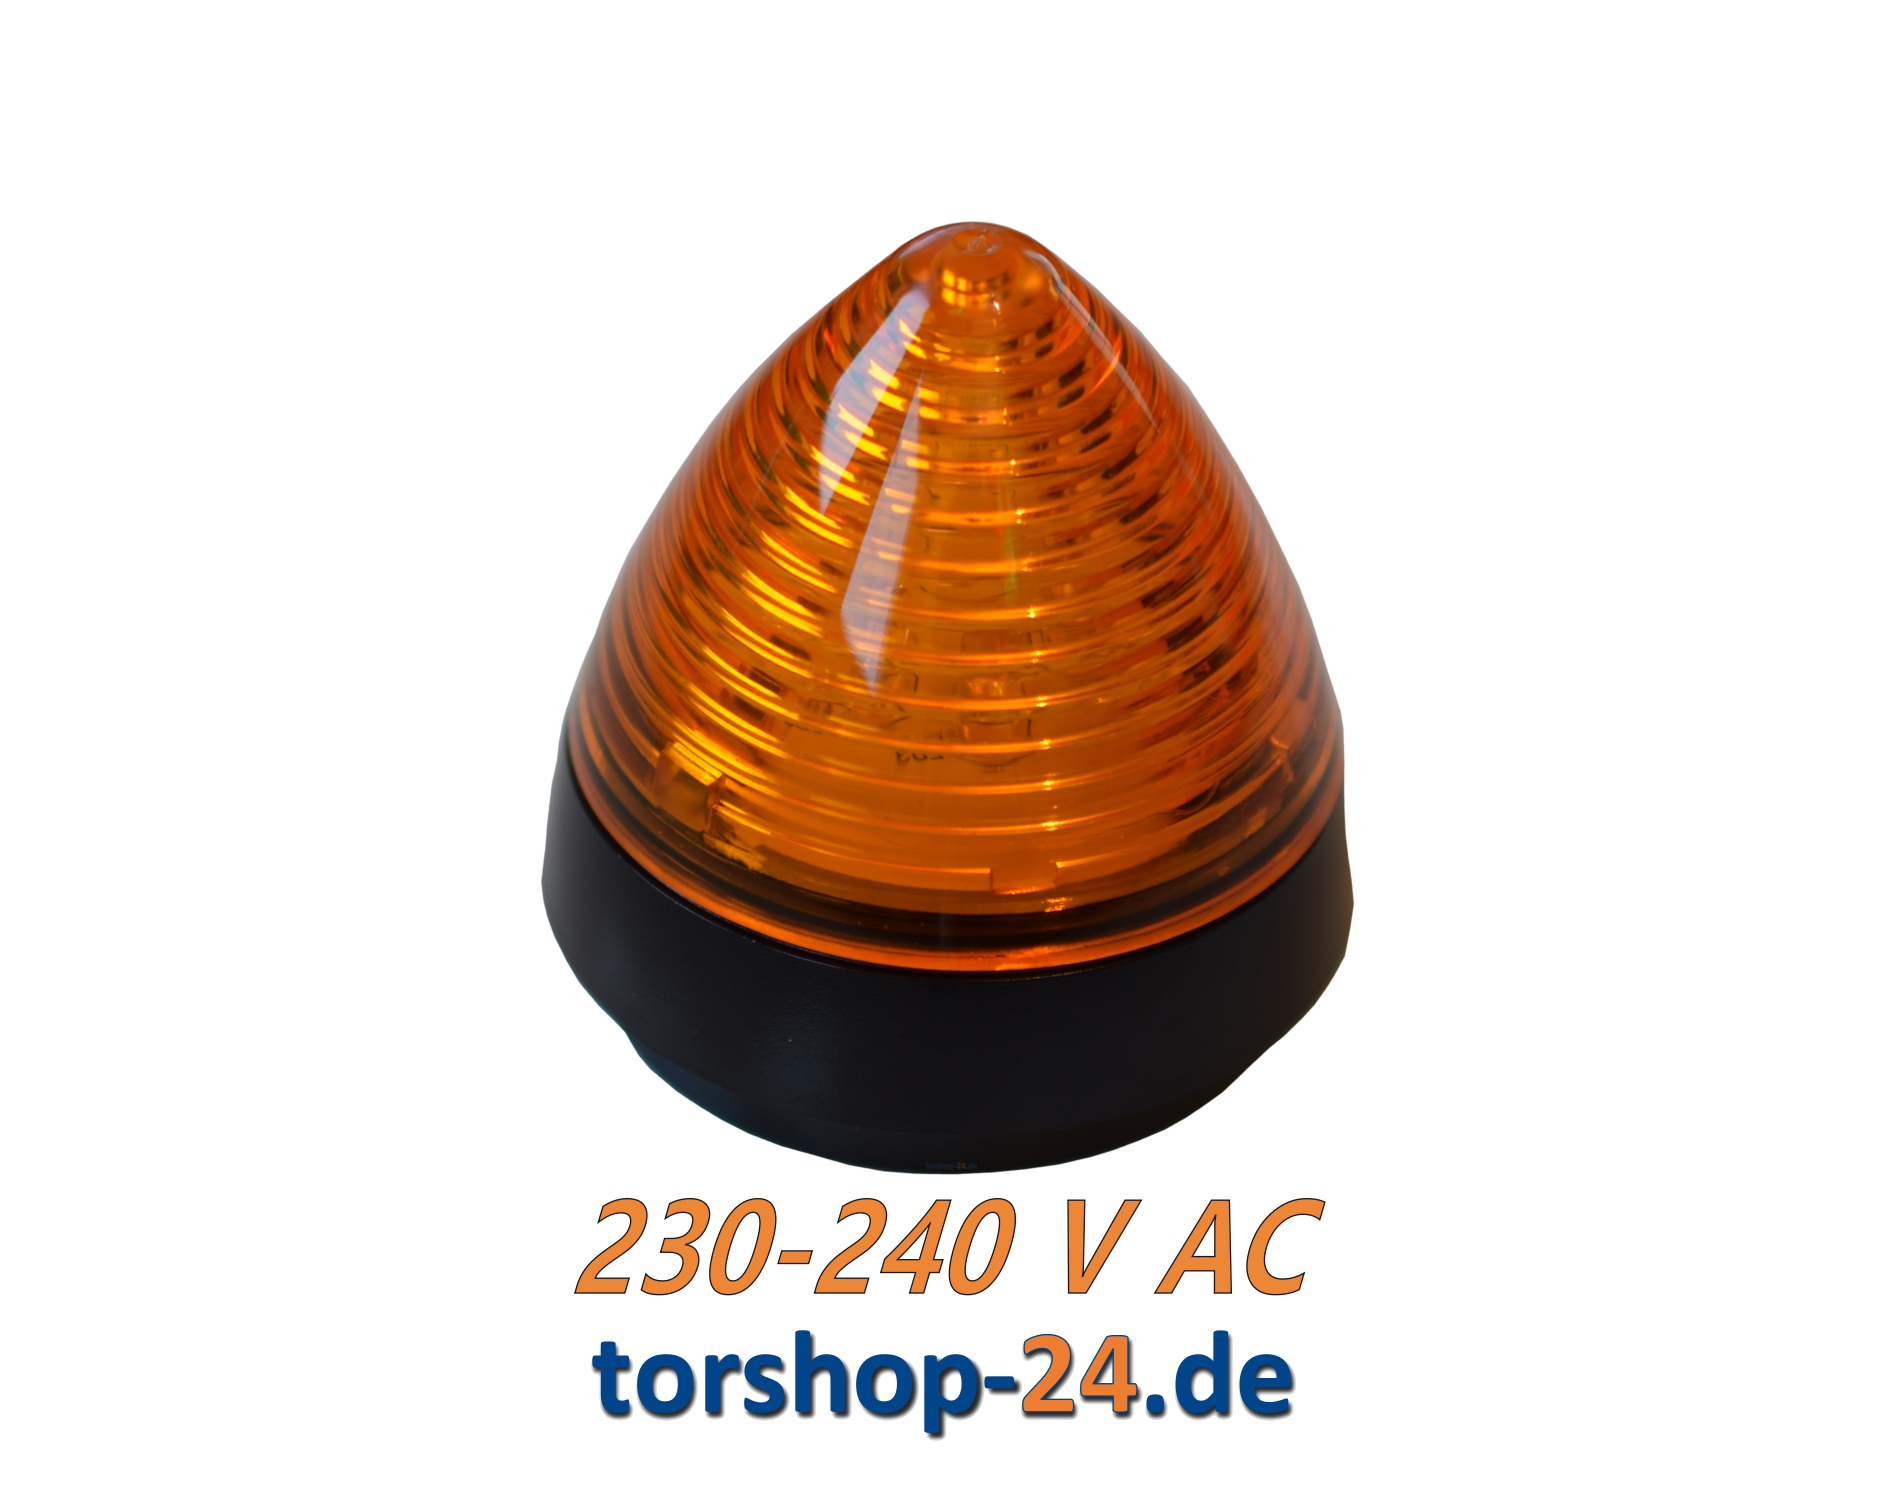 Hörmann LED Signalleuchte SLK 230-240 V AC